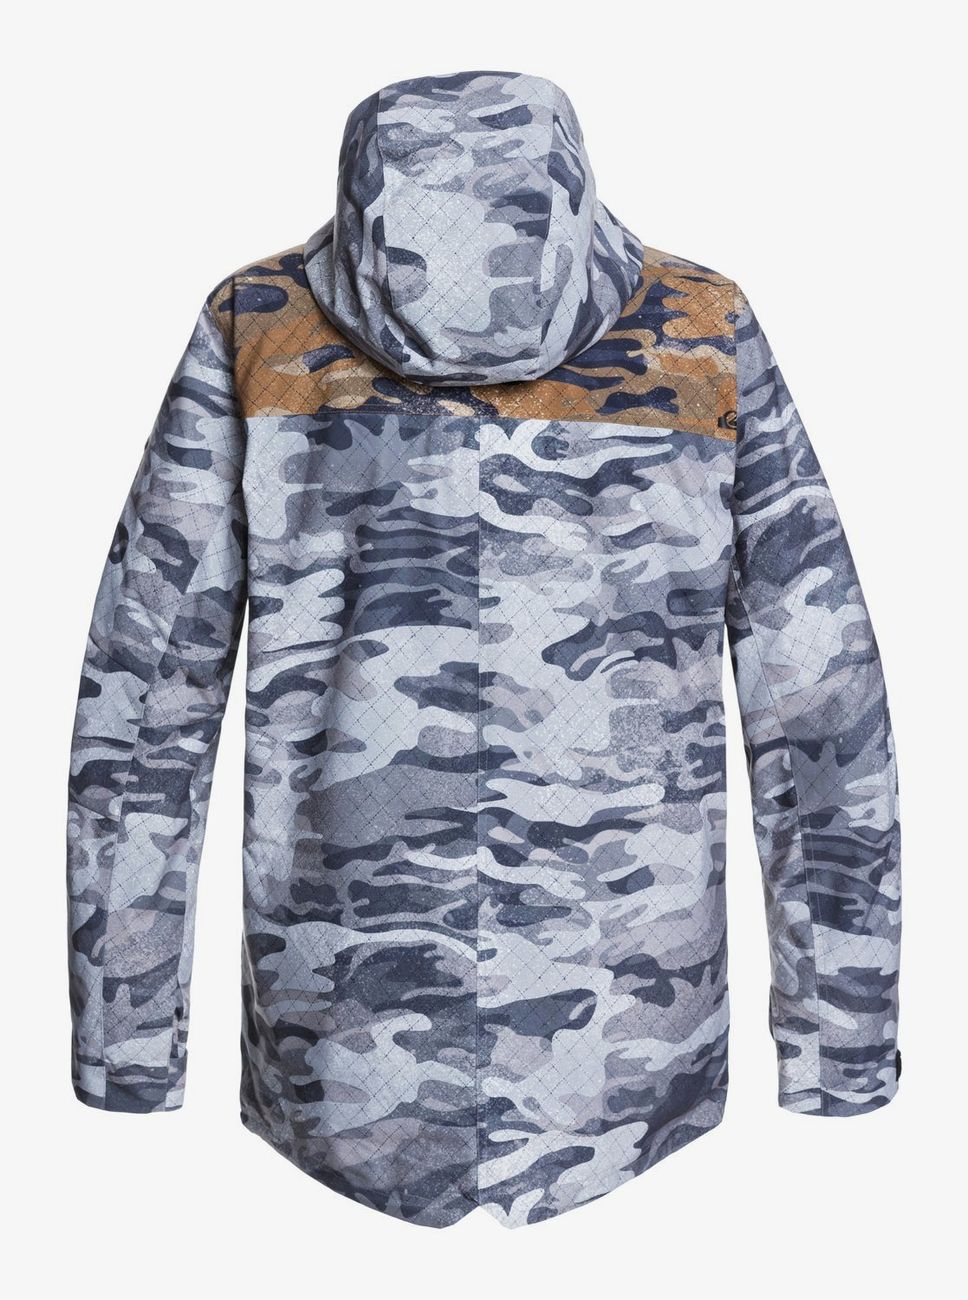 Куртка для зимних видов спорта Quiksilver ( EQYTJ03273 ) FAIRBANKS JK M SNJT 2021 3